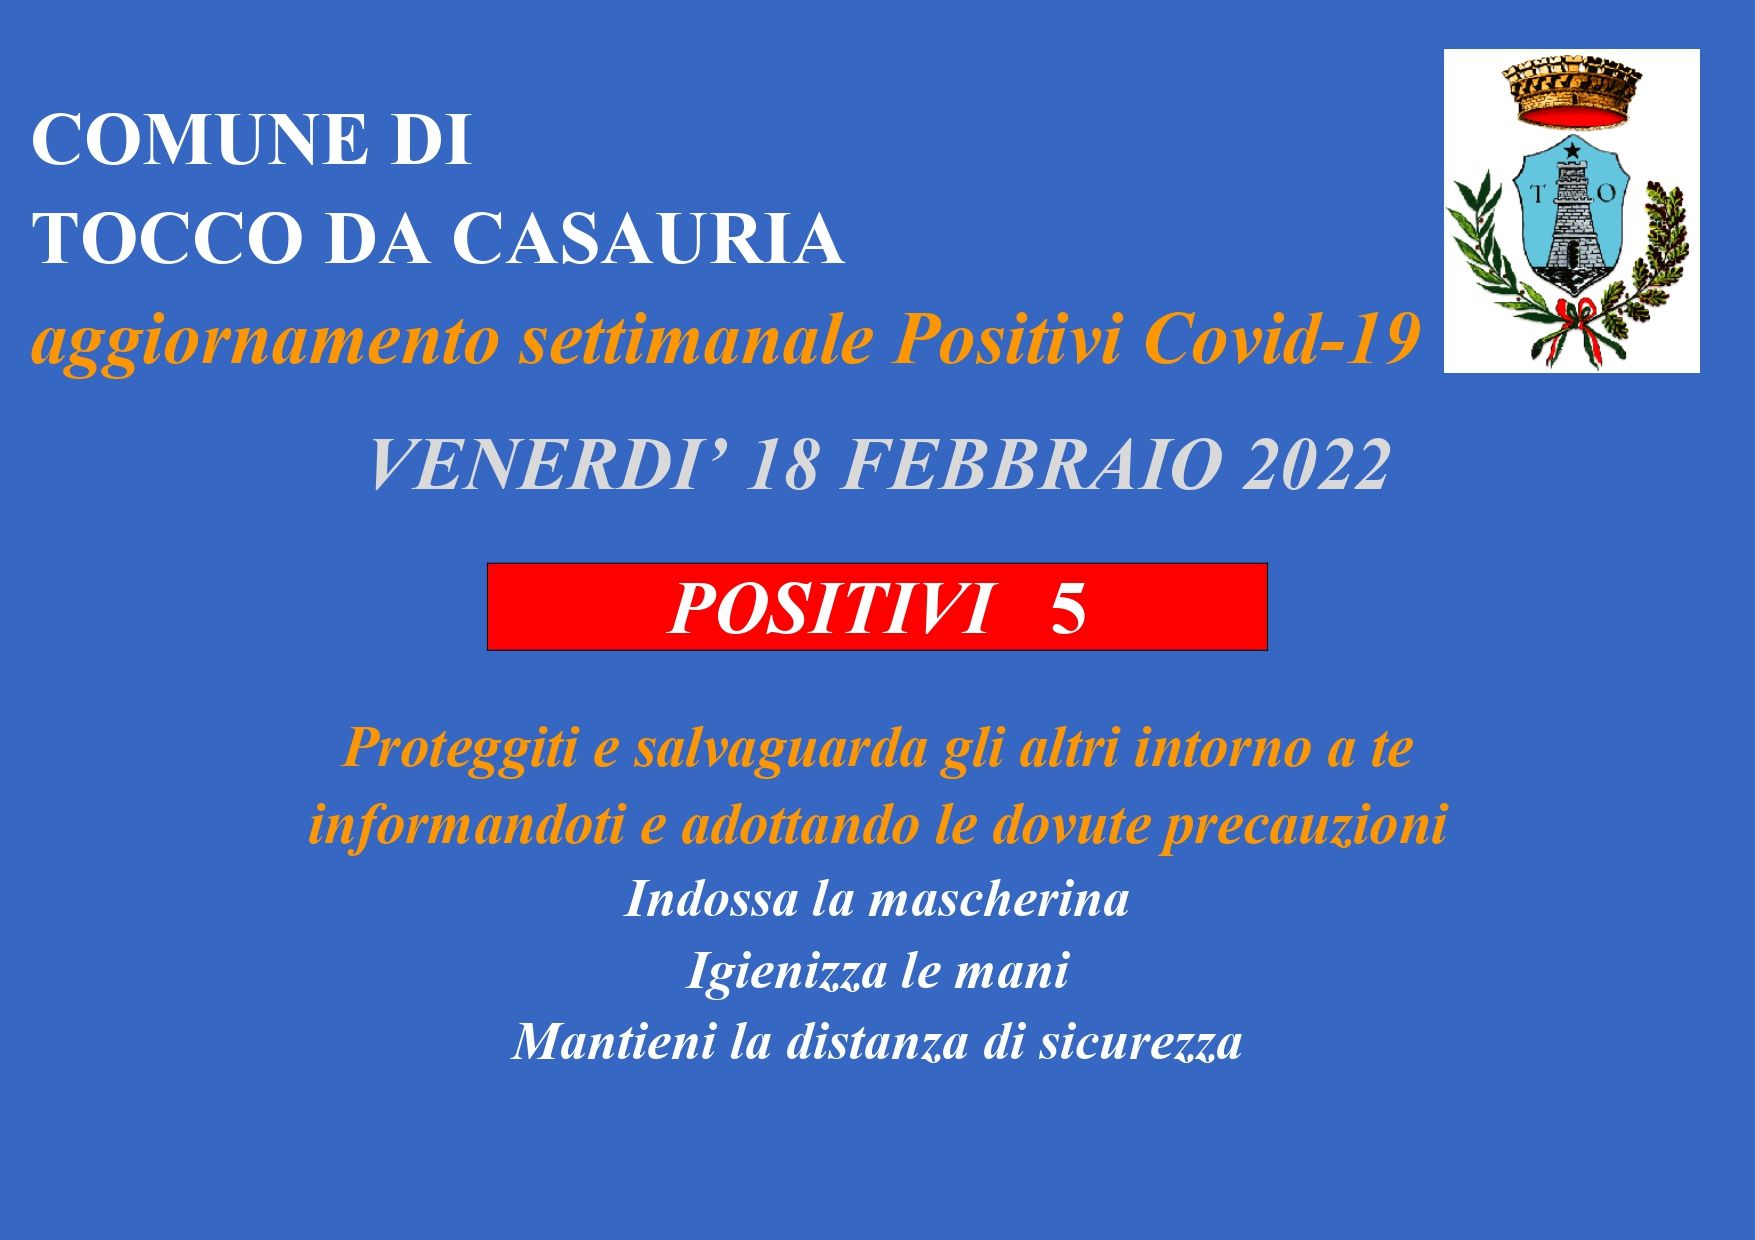 AGGIORNAMENTO SETTIMANALE CASI COVID-19